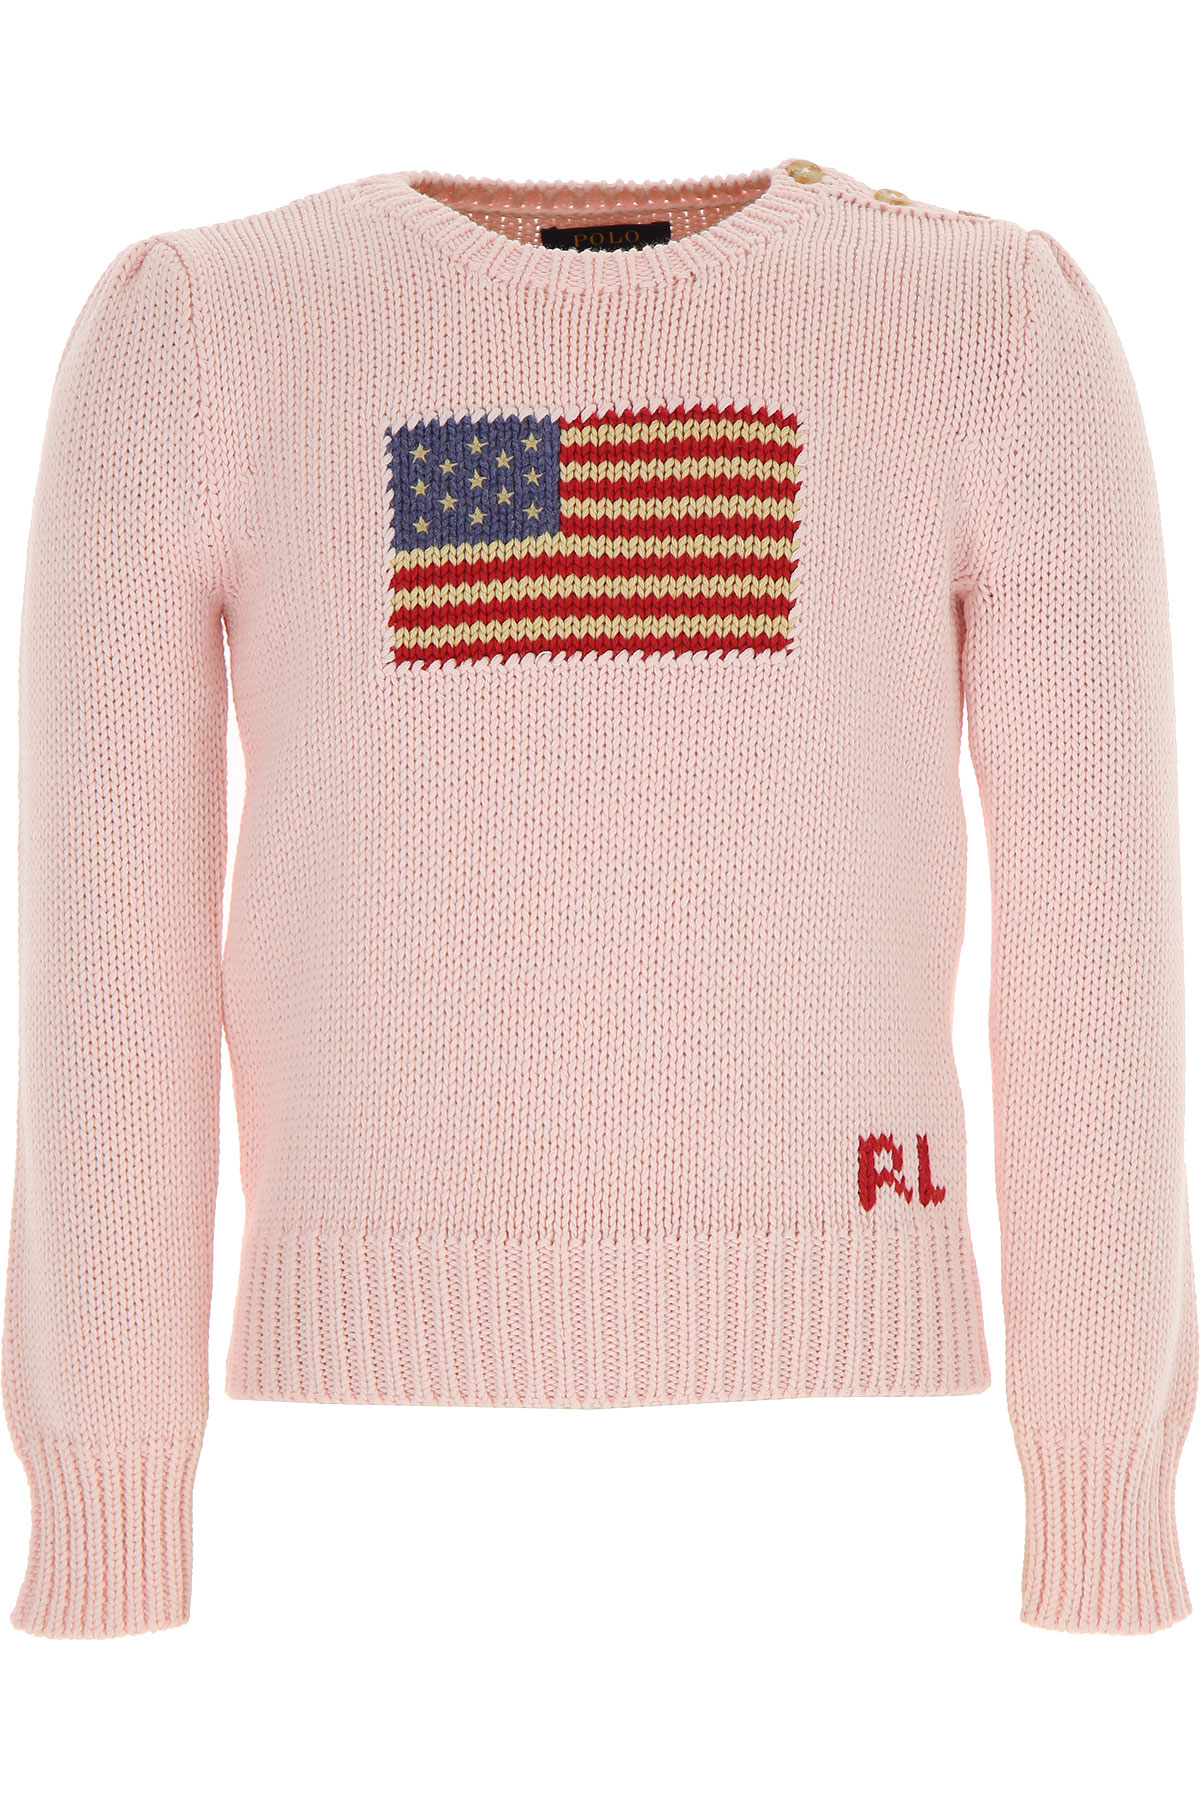 Ralph Lauren Kinder Pullover für Mädchen Günstig im Sale, Pink, Baumwolle, 2017, 6Y XL